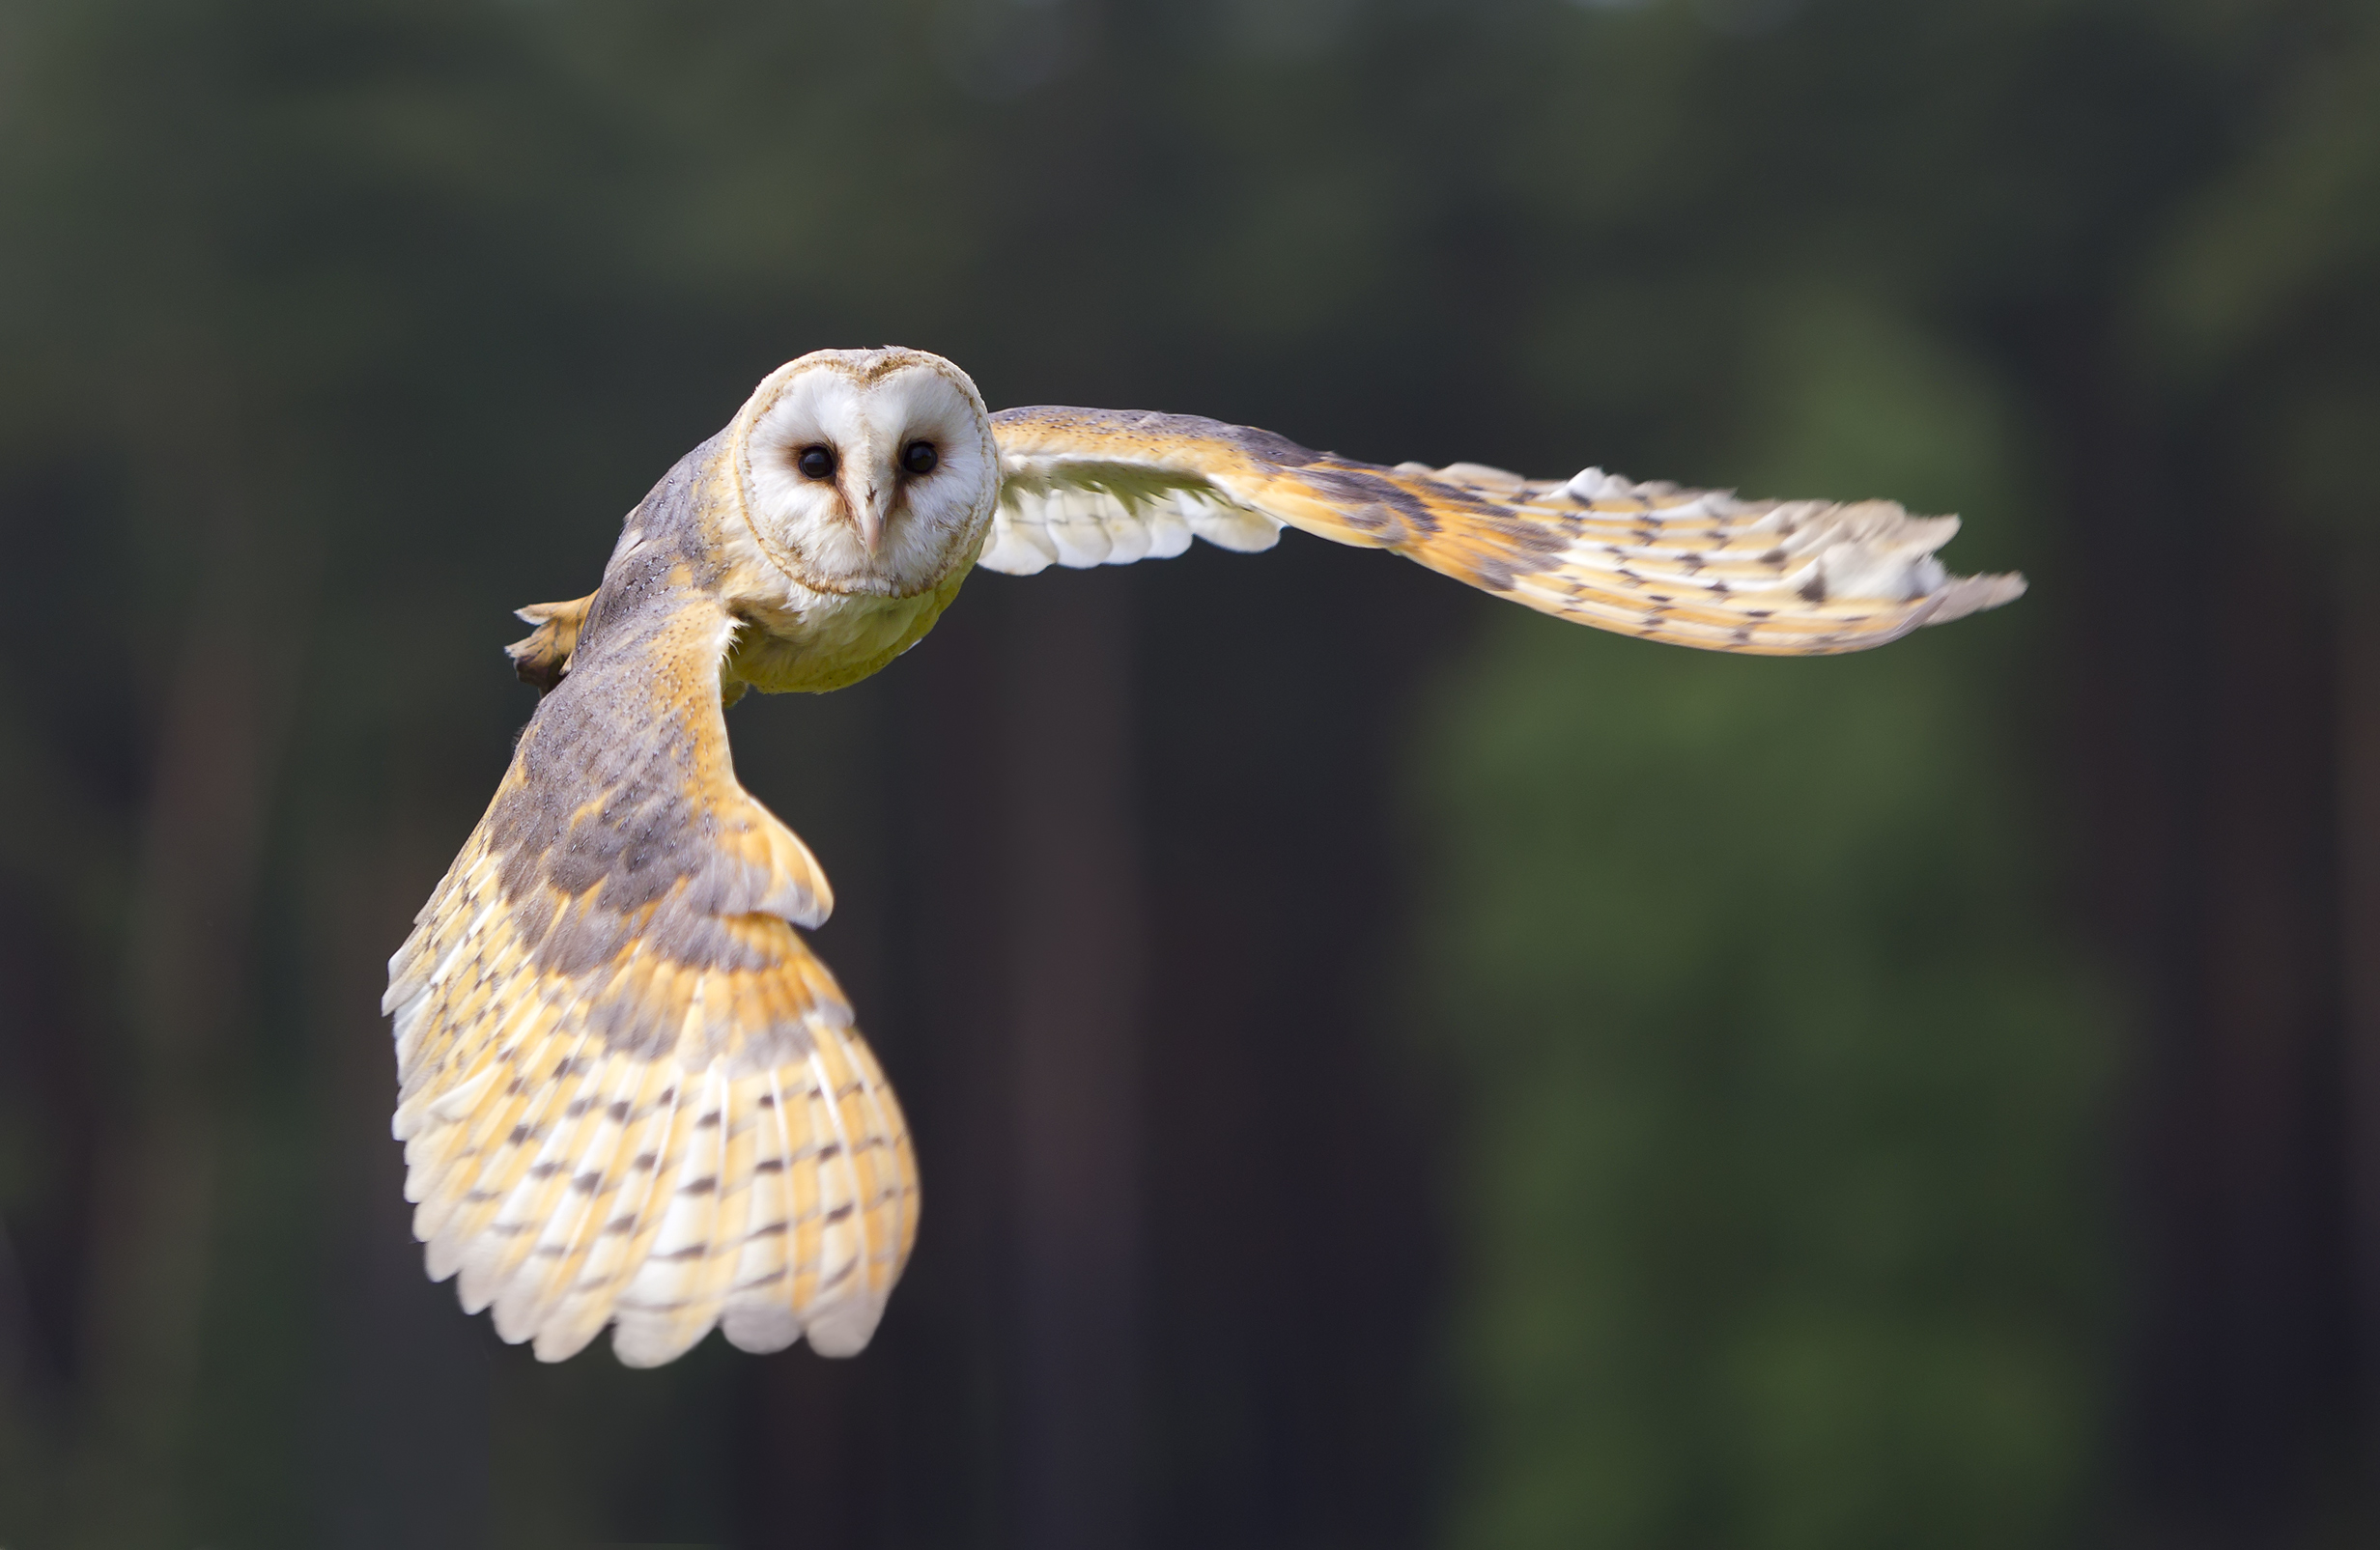 Barn owl in flight